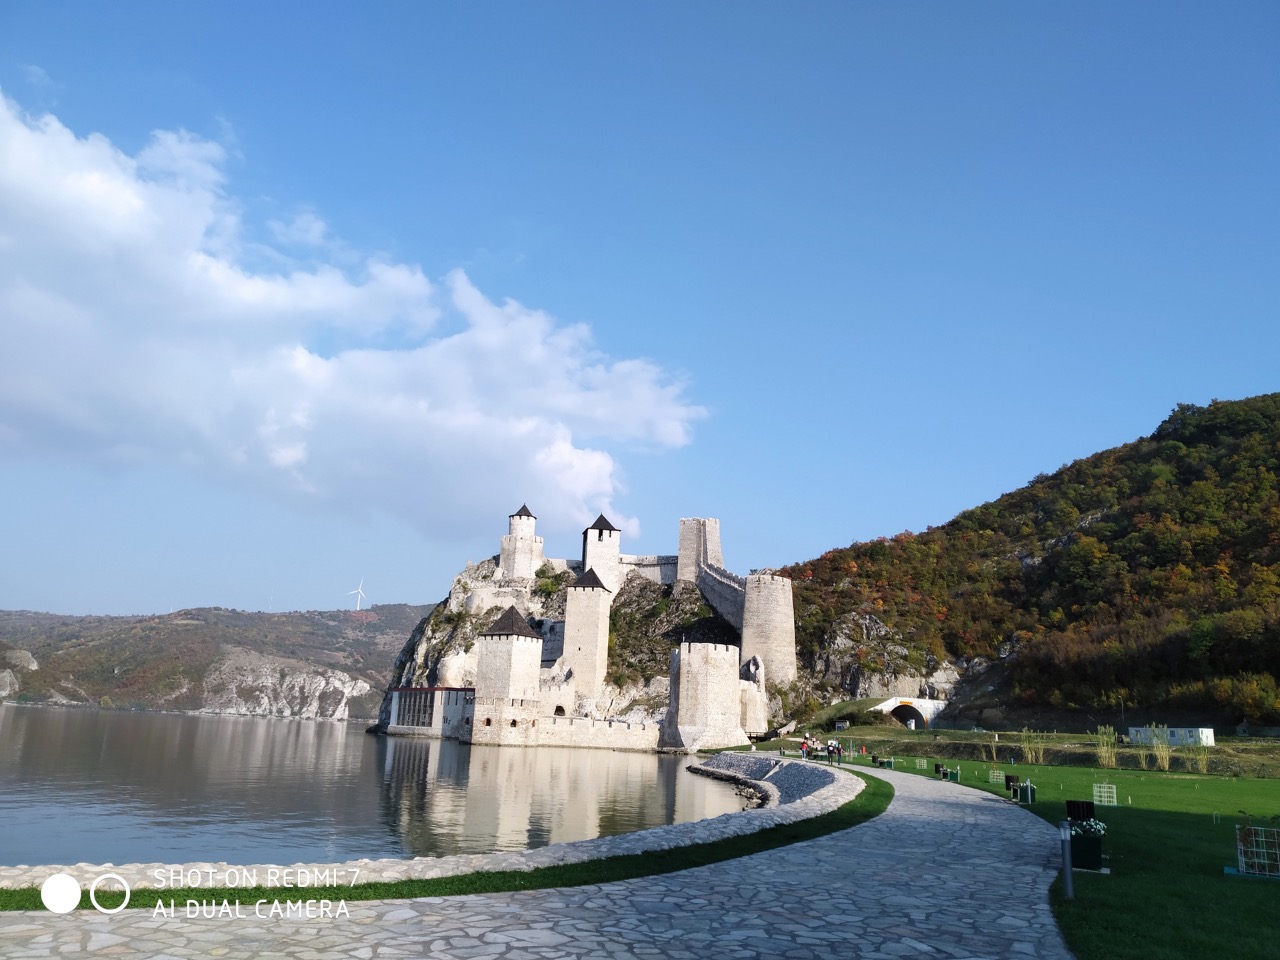 Голубацкая крепость и монастырь Туман + озеро | Цена 270€, отзывы, описание экскурсии